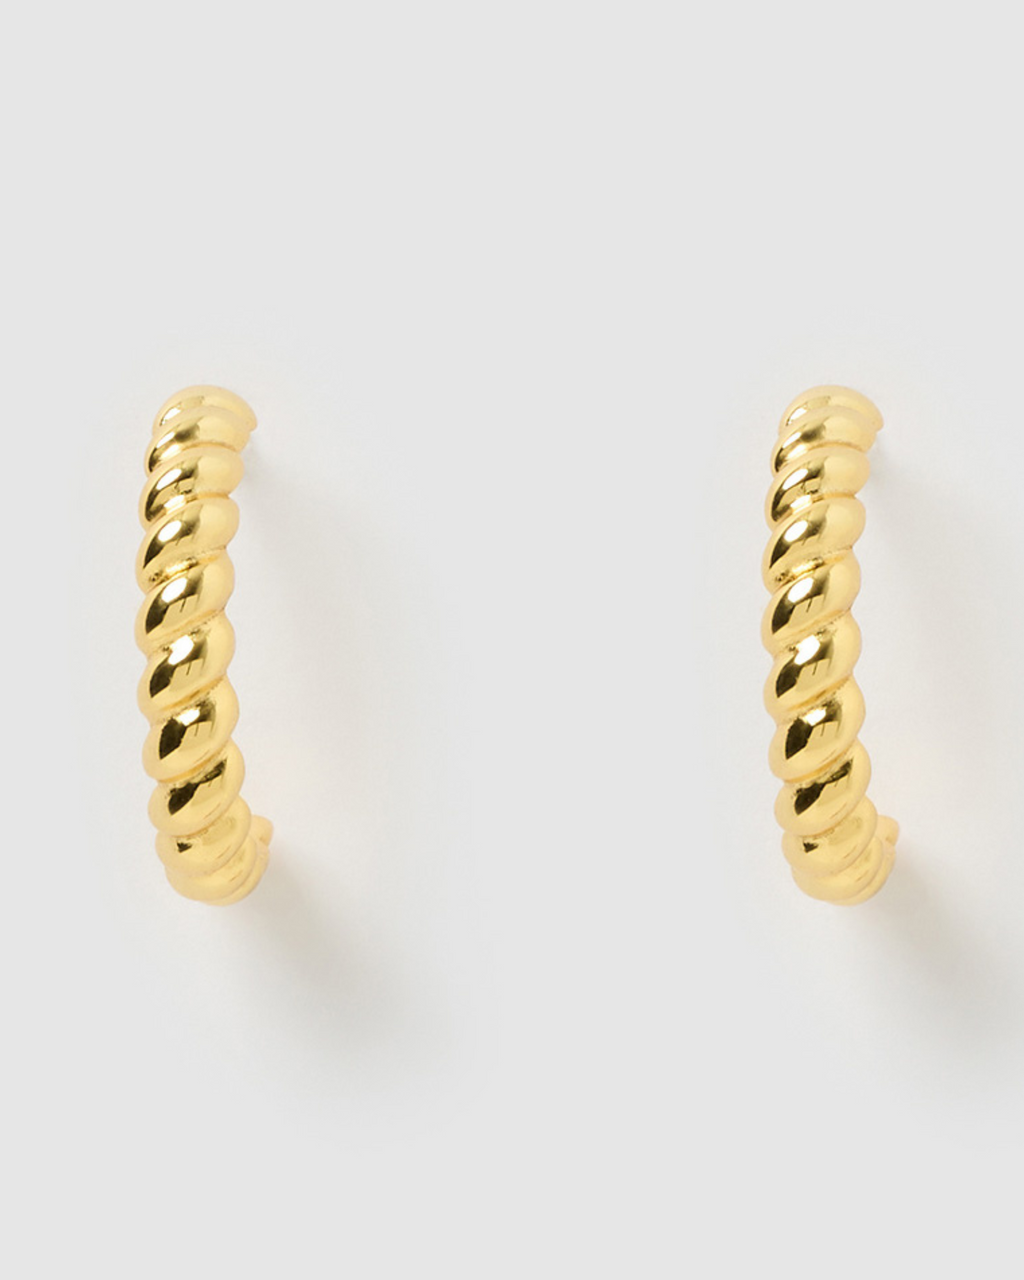 Izoa Kaelie Mini Hoop Earrings Gold